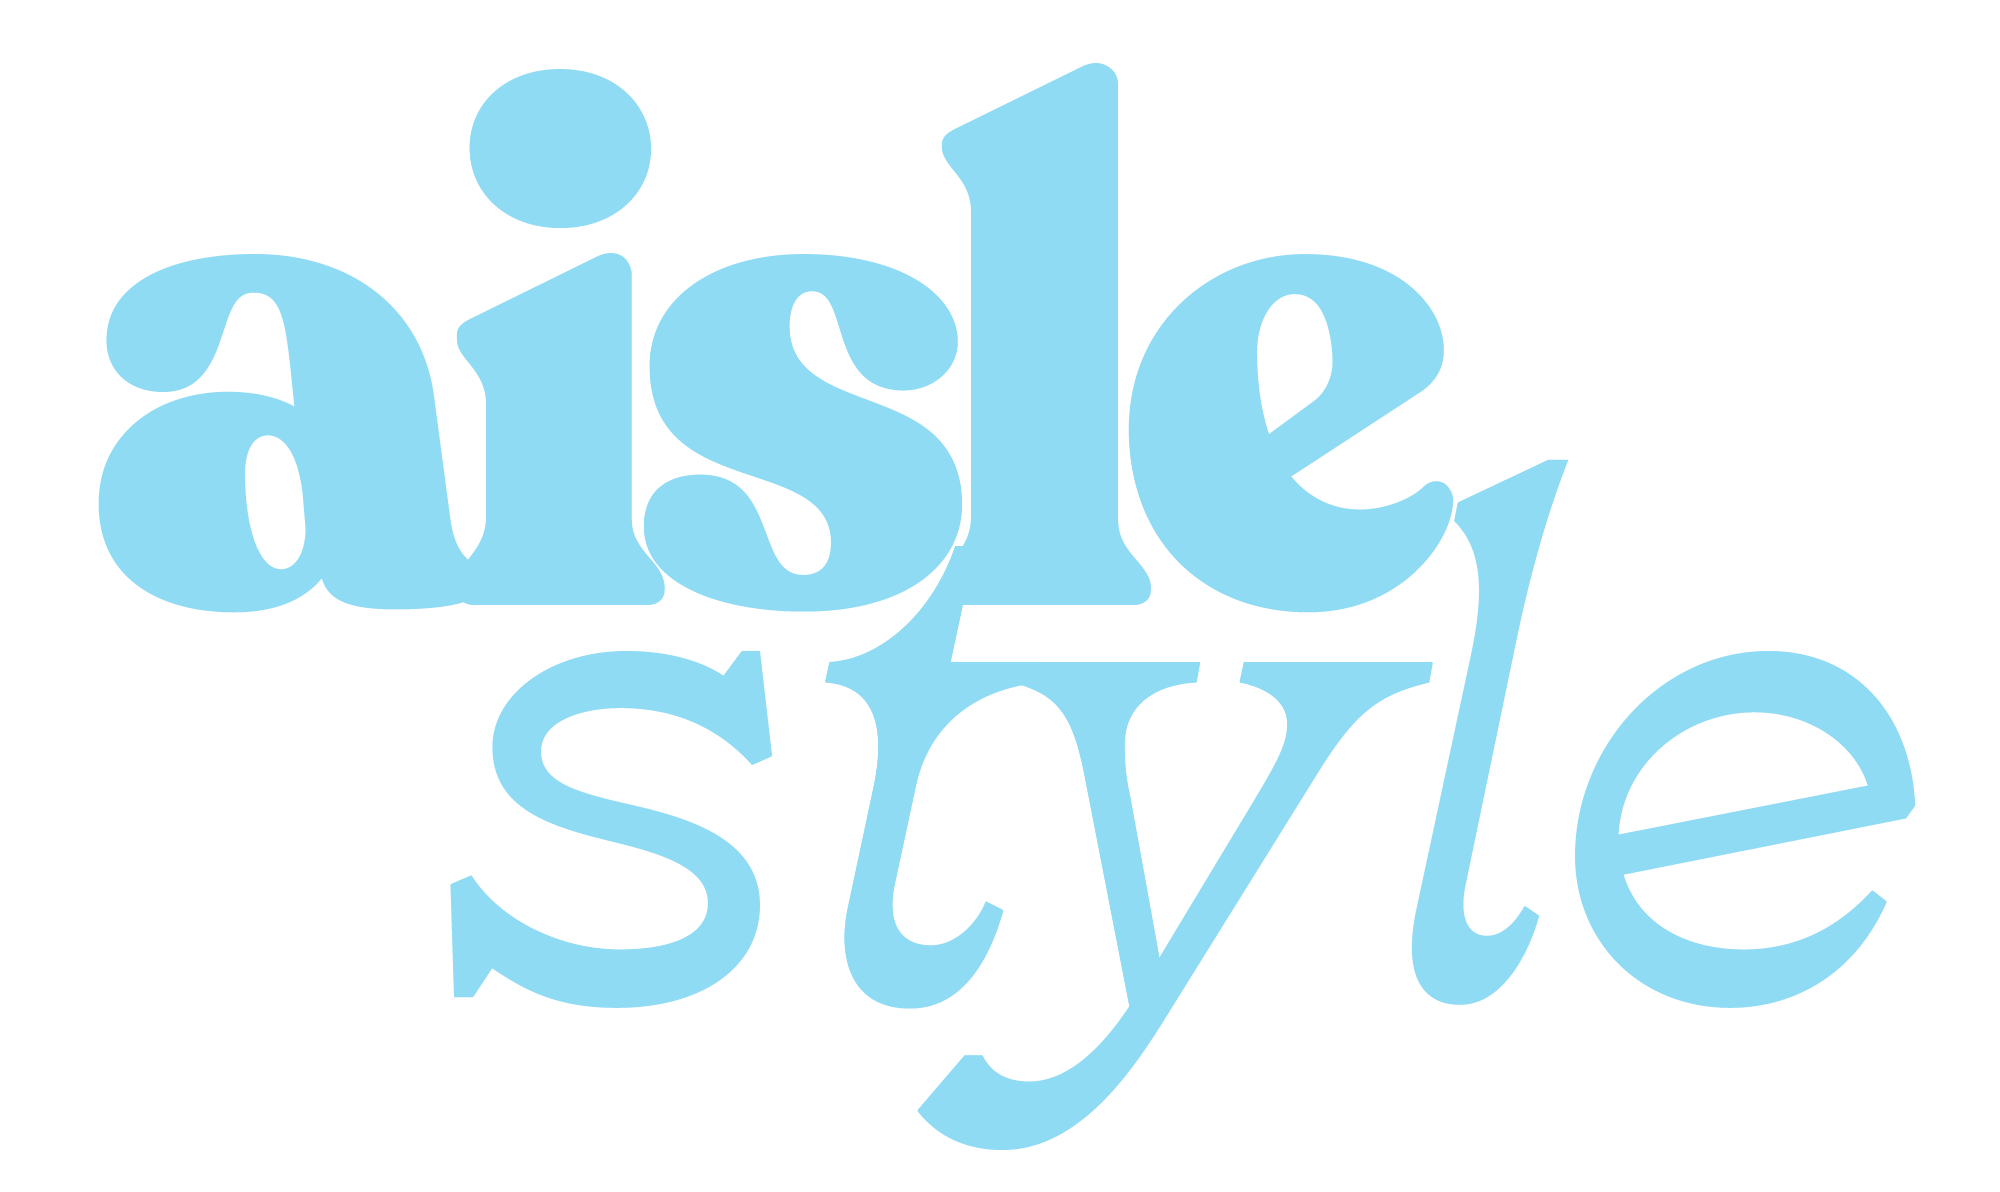 aisle style logo